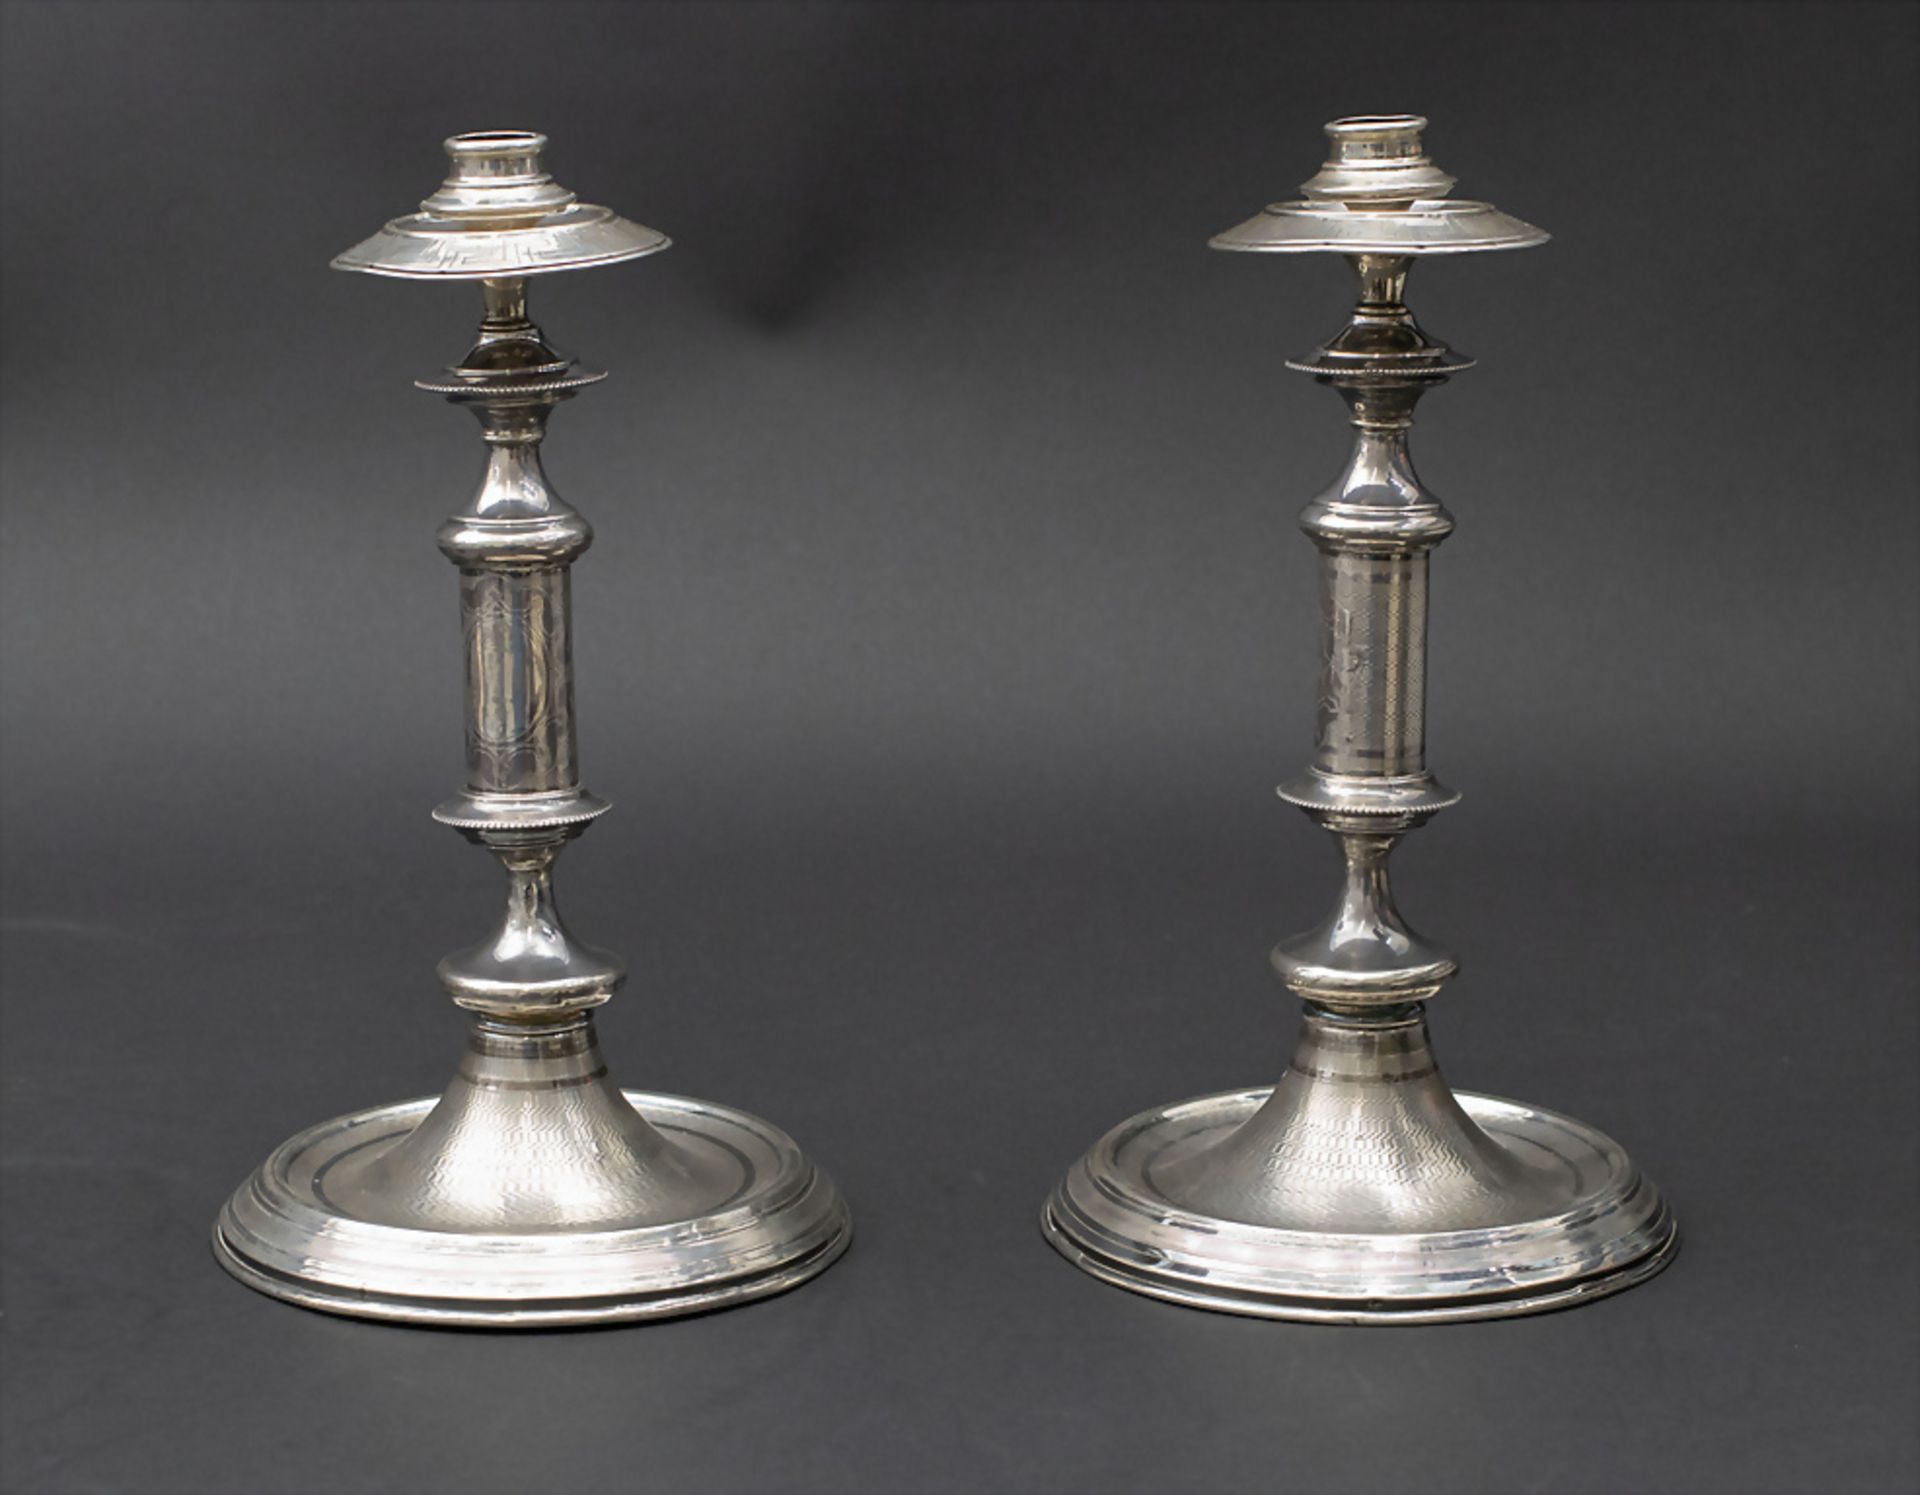 Paar Silberleuchter / A pair of silver candlesticks, Carreras, Barcelona, 19. Jh.